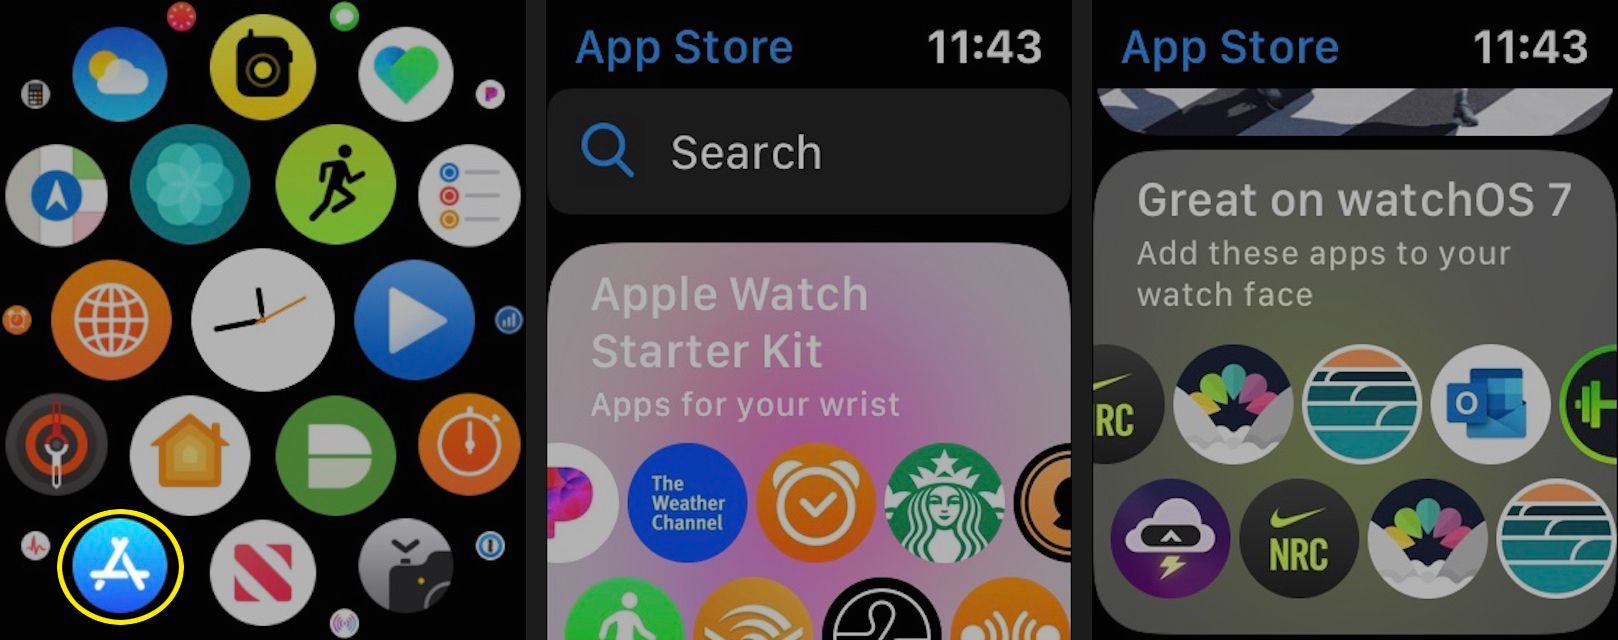 Open de App Store op je Apple Watch om aanbevolen apps te zien